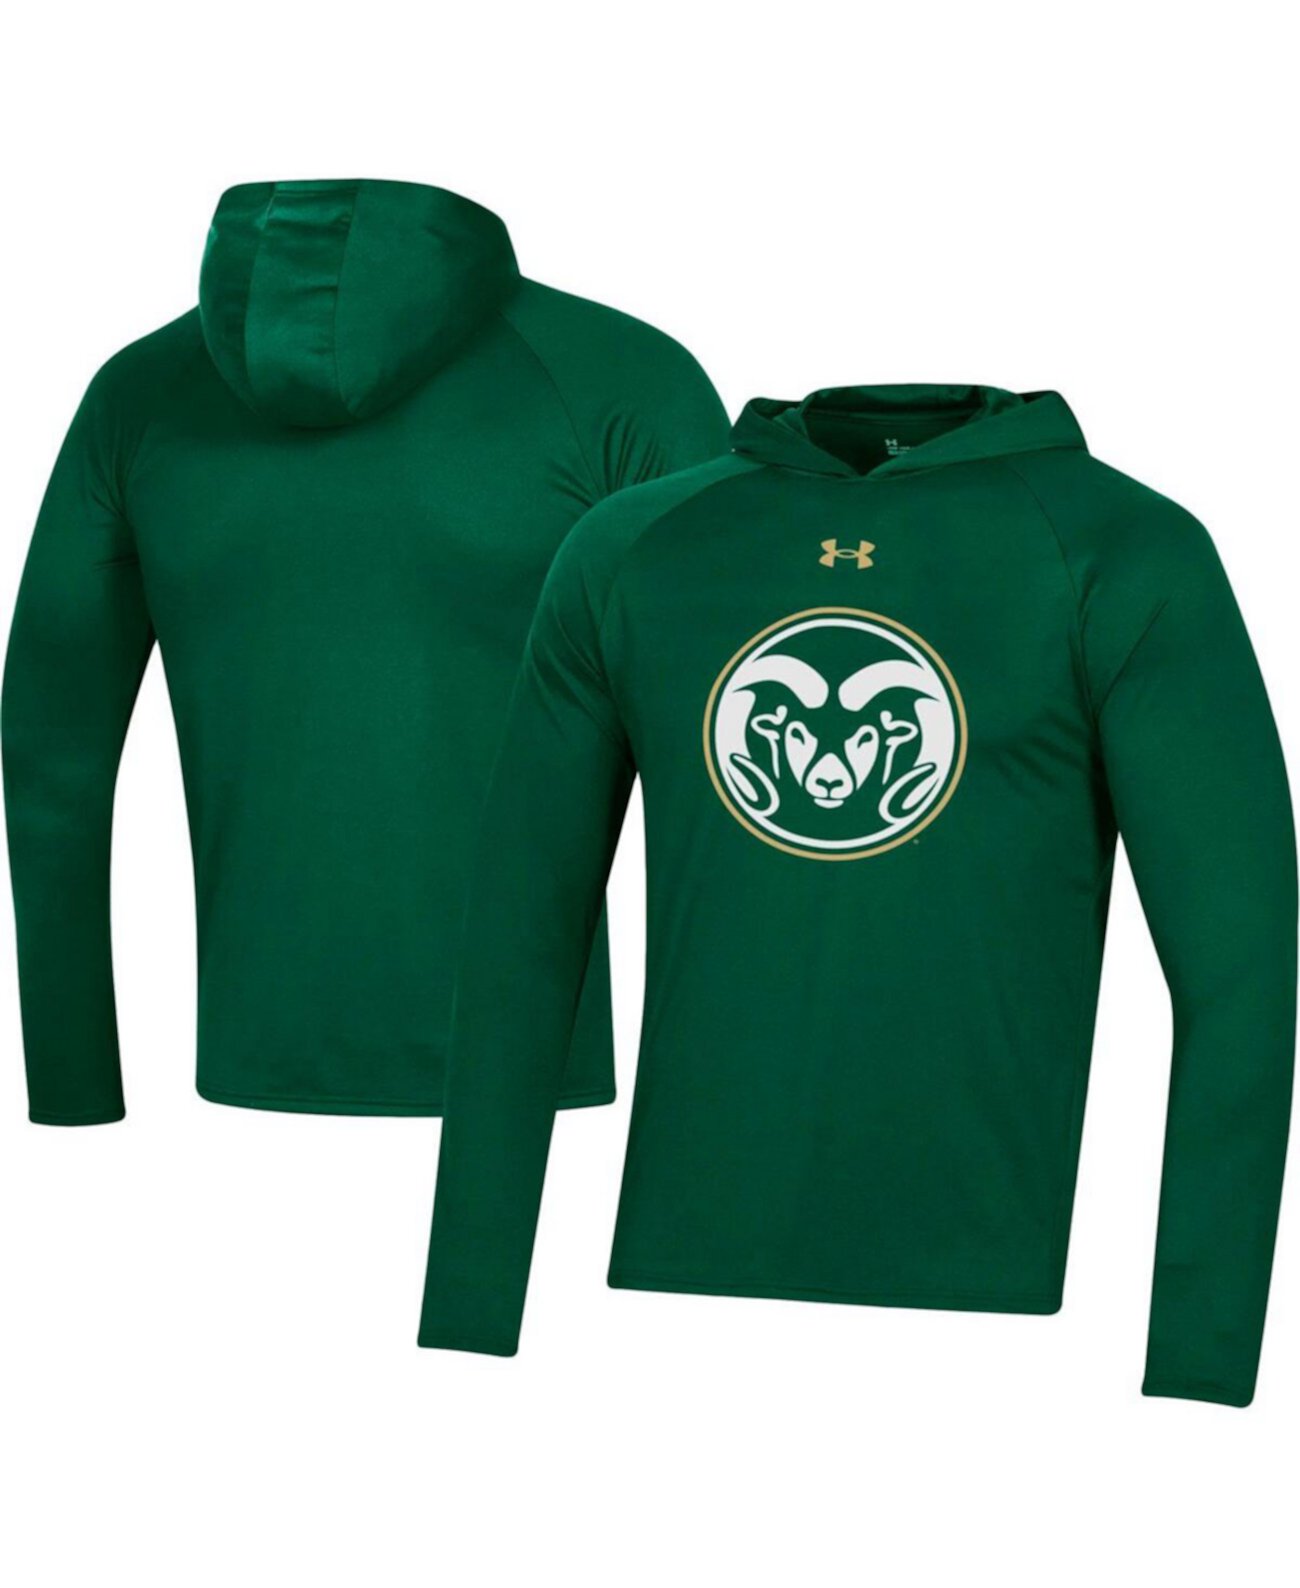 Мужская зеленая толстовка с длинным рукавом и логотипом школы Colorado State Rams School реглан, футболка для выступлений Under Armour